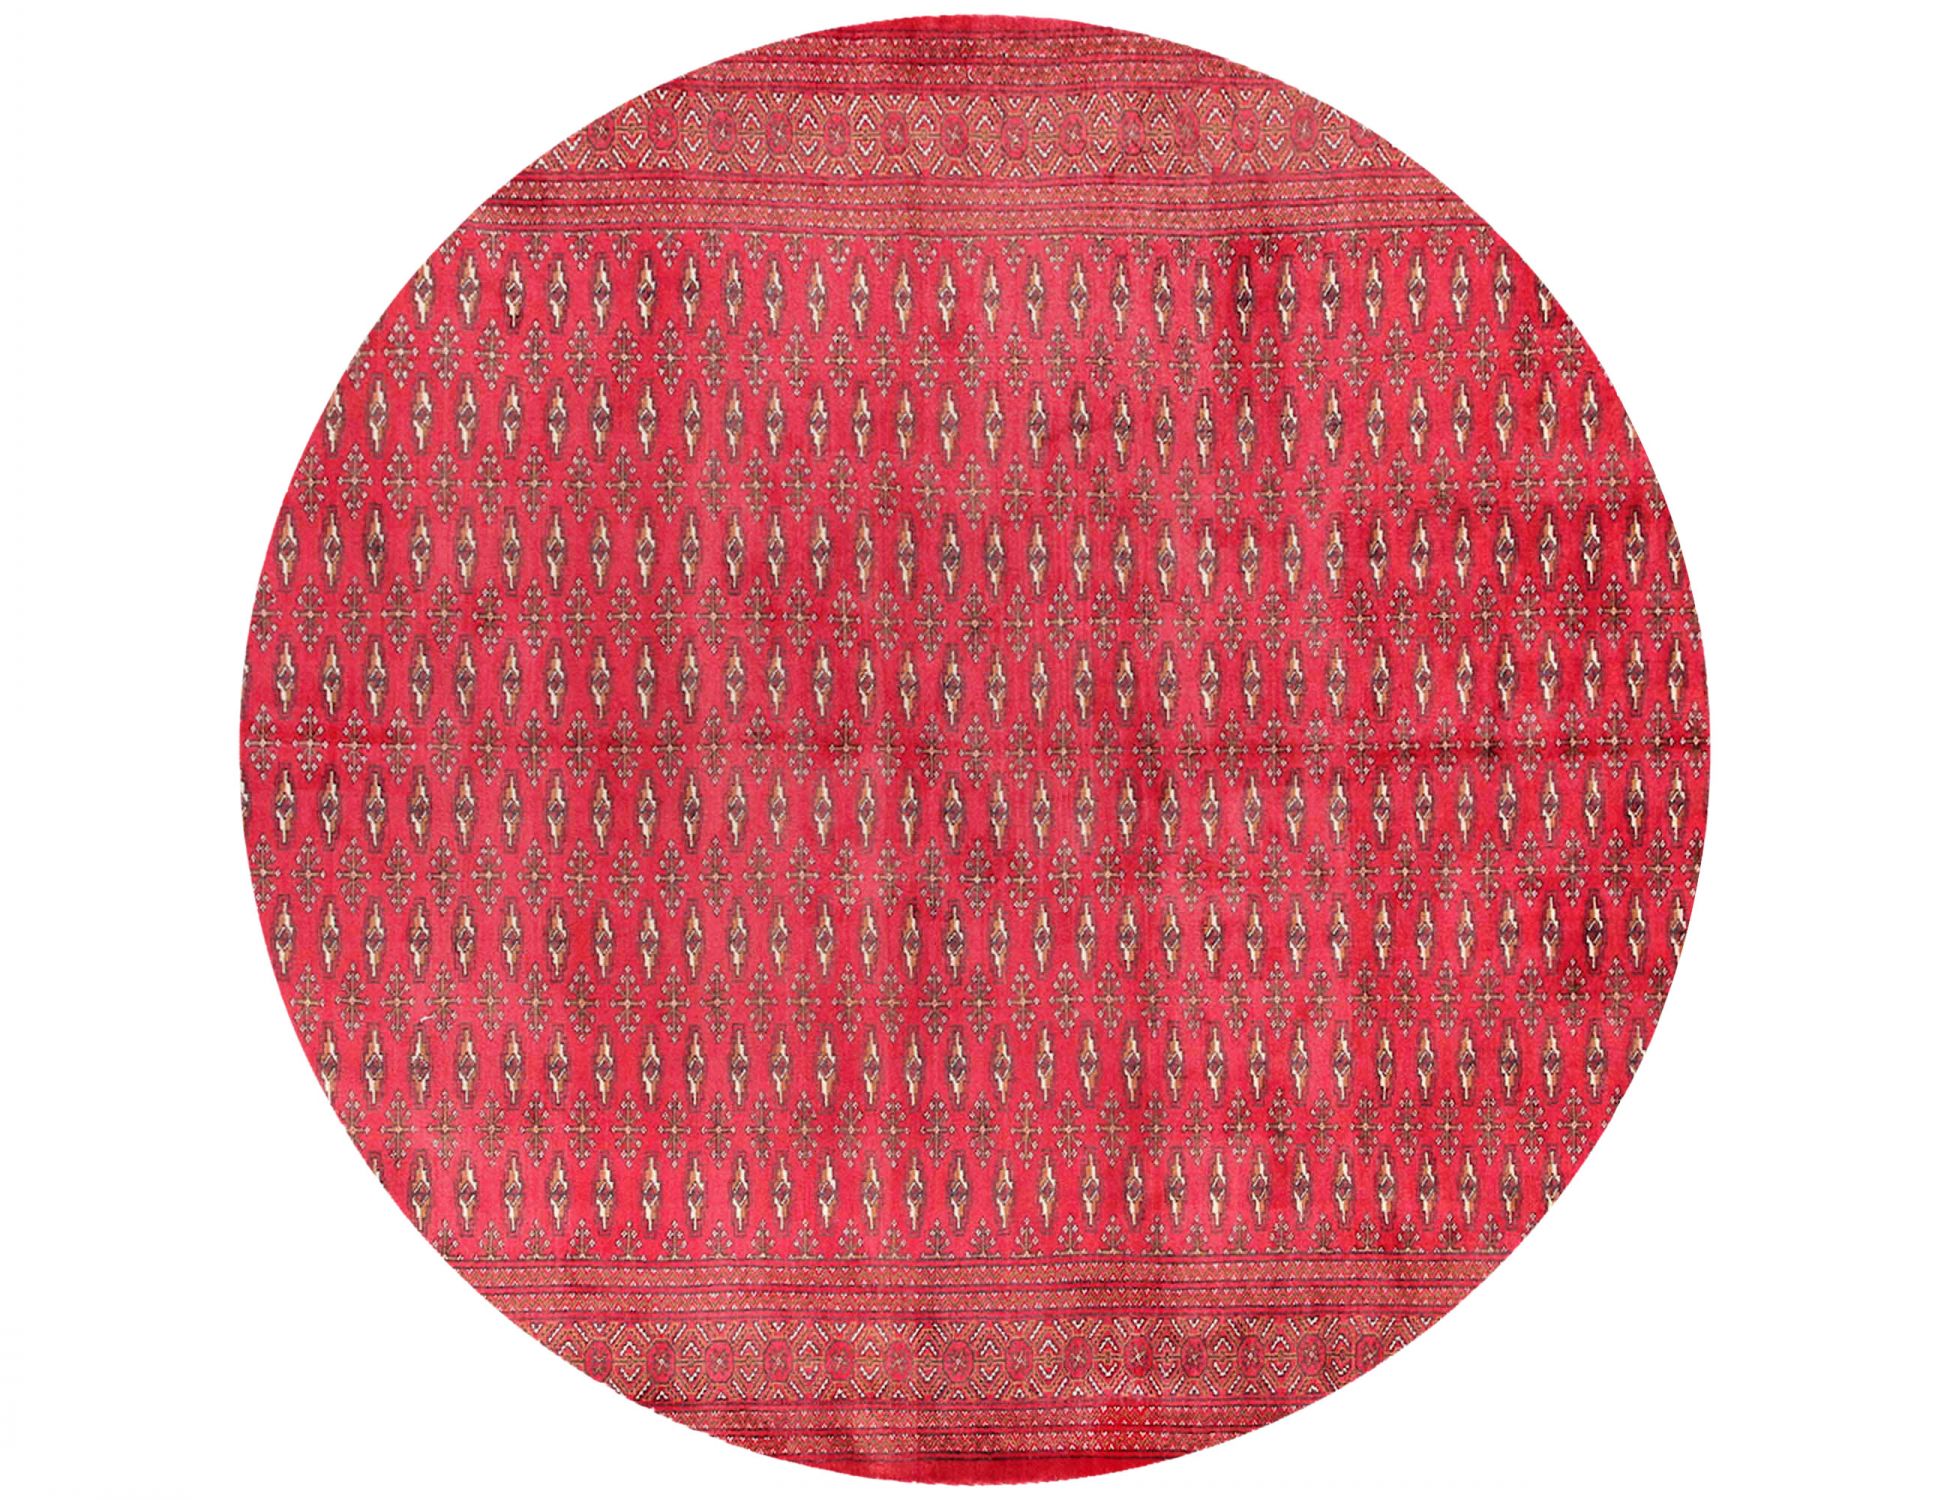  Tappeto  rosso <br/>202 x 202 cm